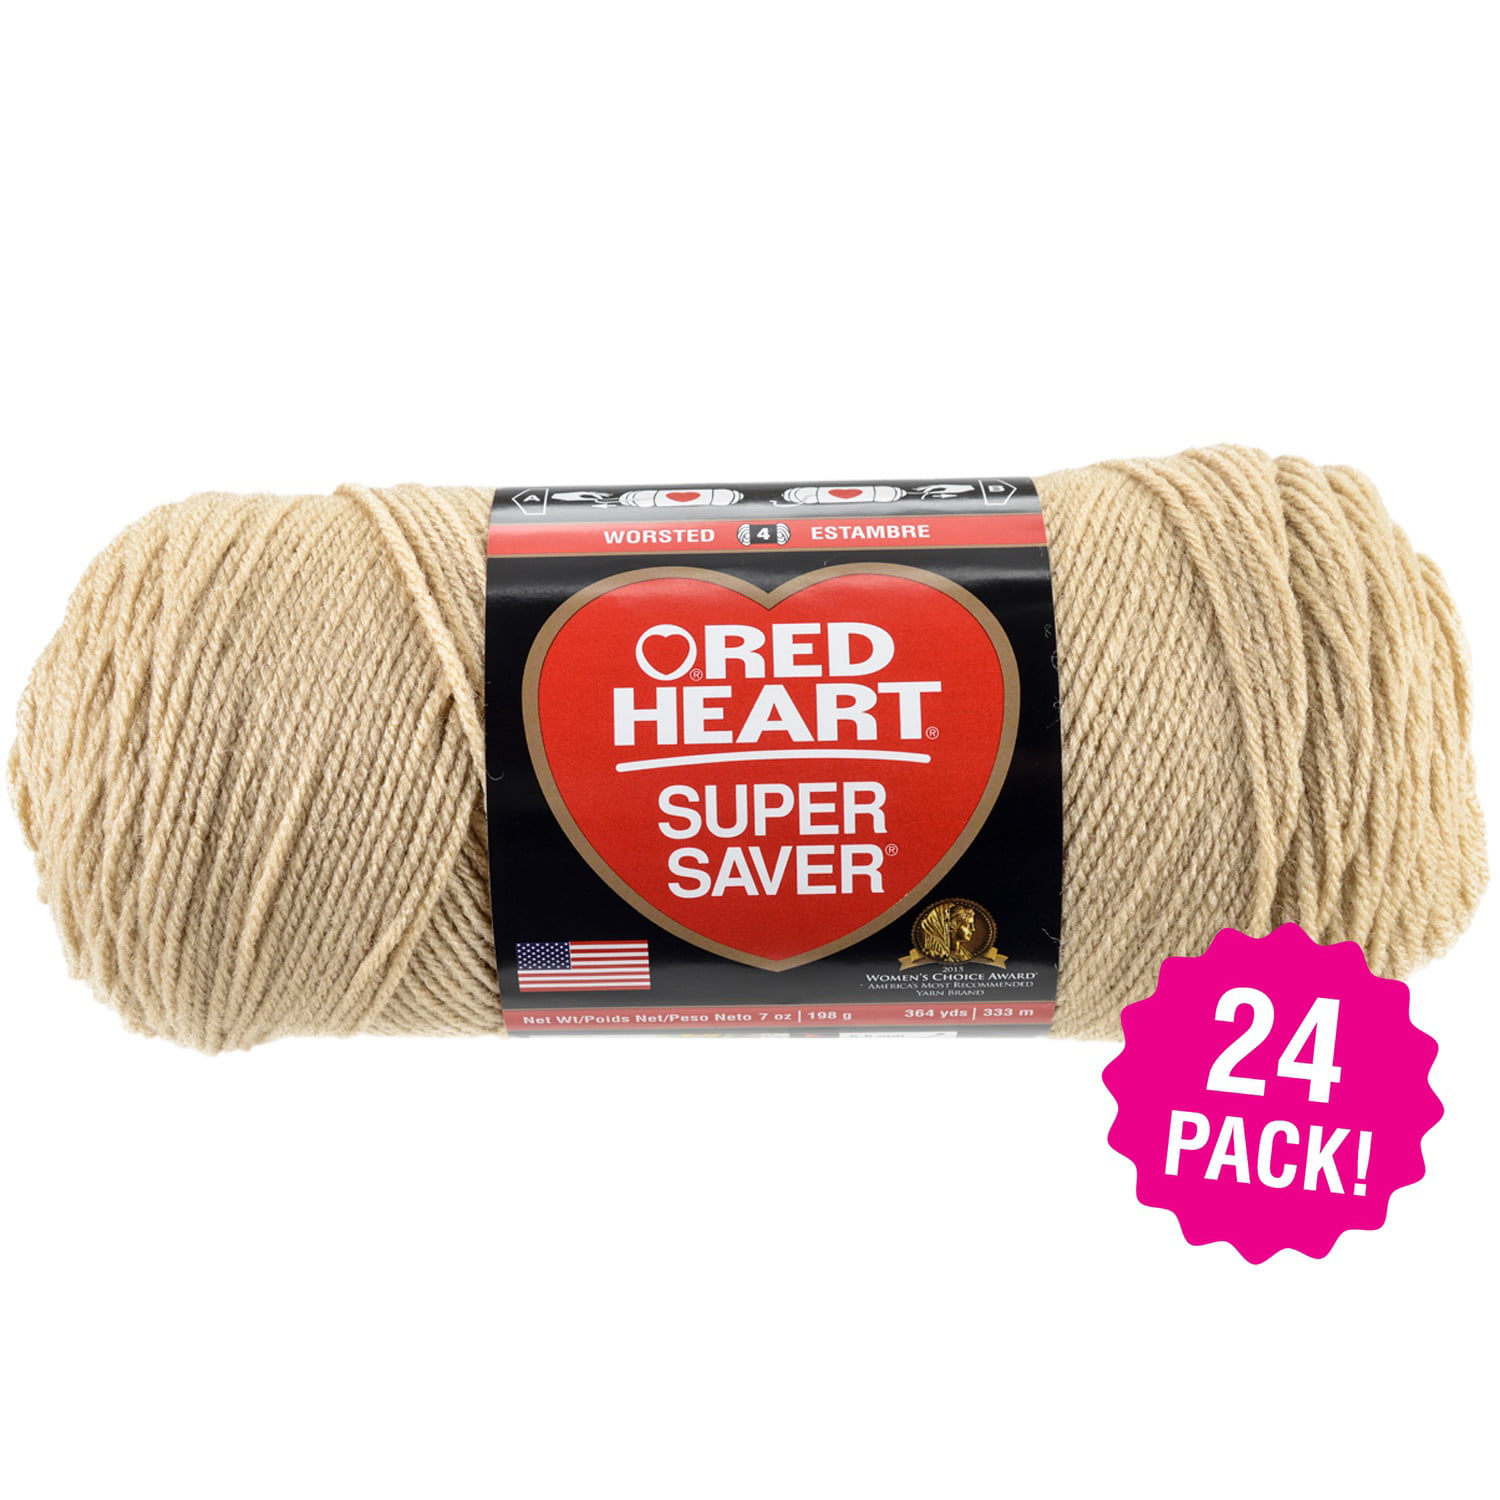 RED HEART Super Saver Yarn, Buff